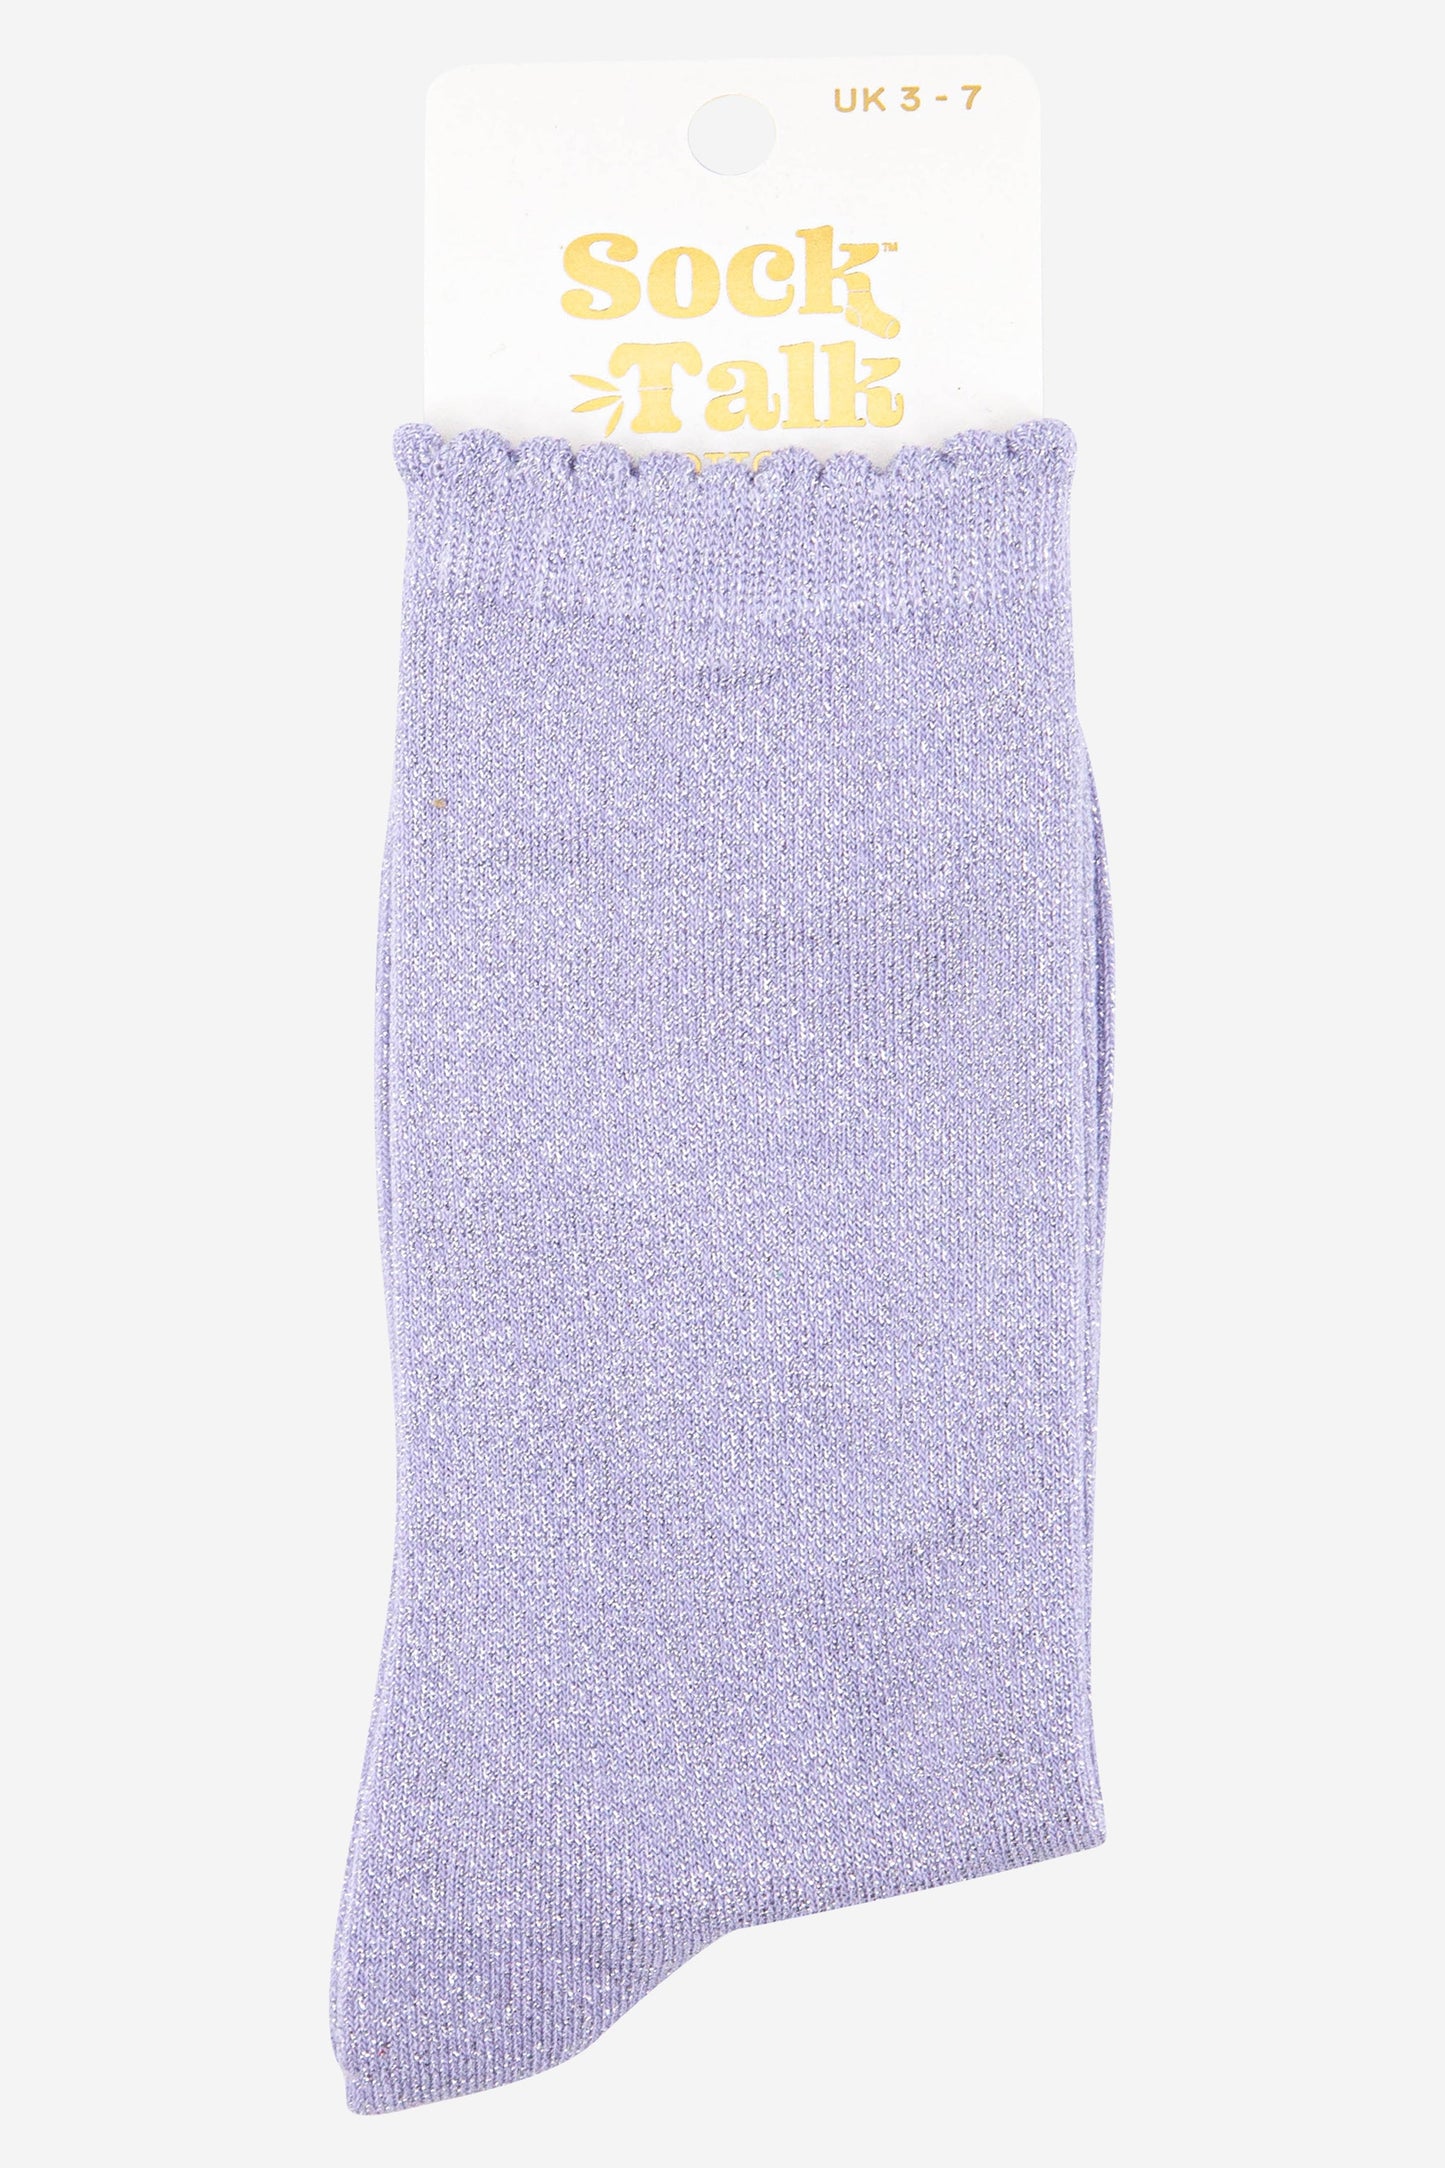 lilac purple scalloped cuff cotton glitter socks uk size 3-7